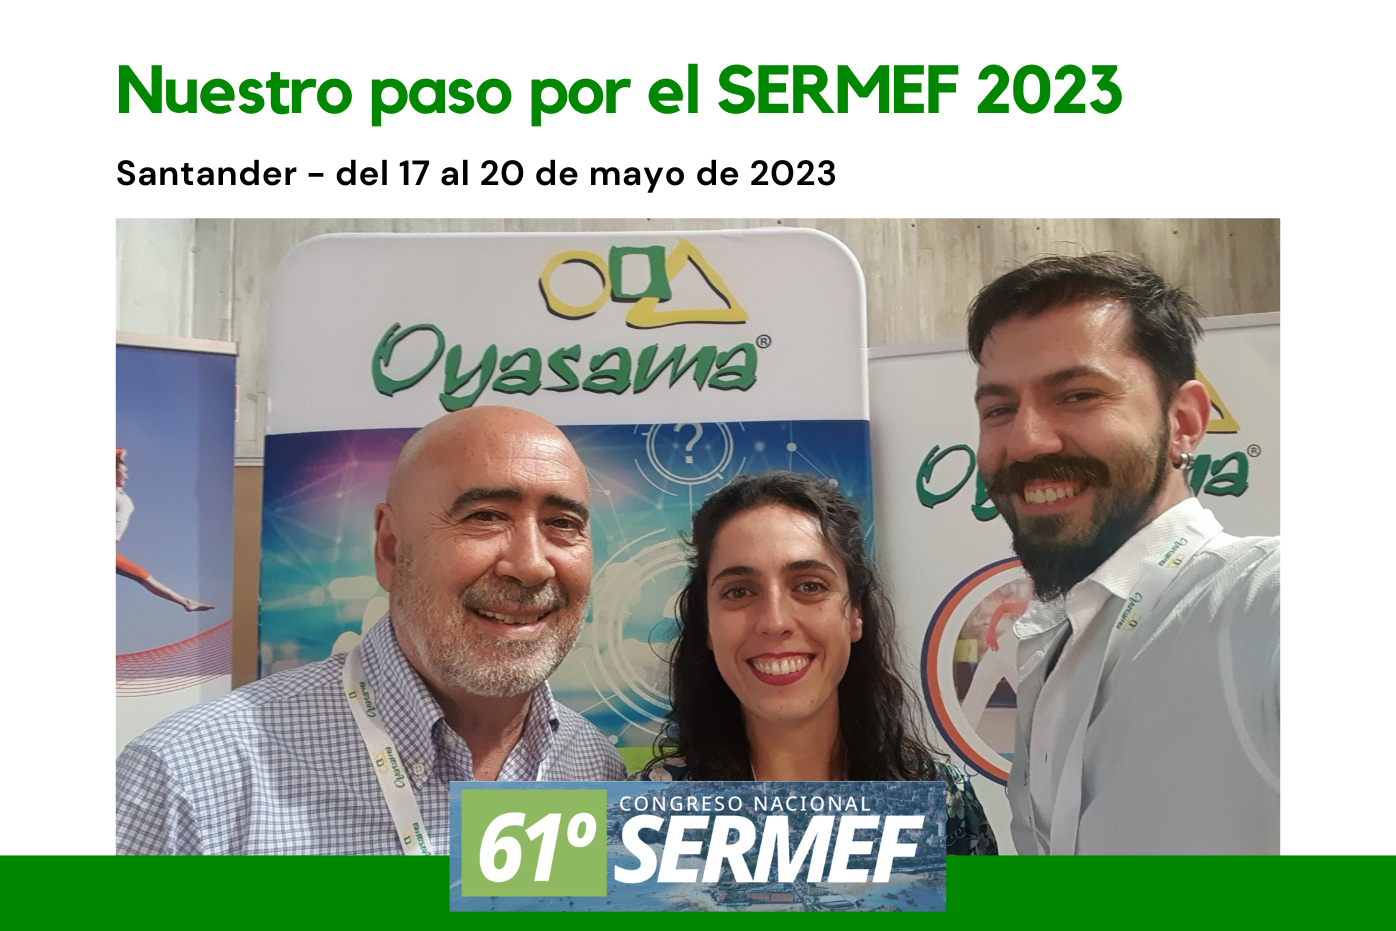 Oyasama patrocinador del 61º Congreso de la Sociedad Española de Rehabilitación y Medicina Física SERMEF 2023